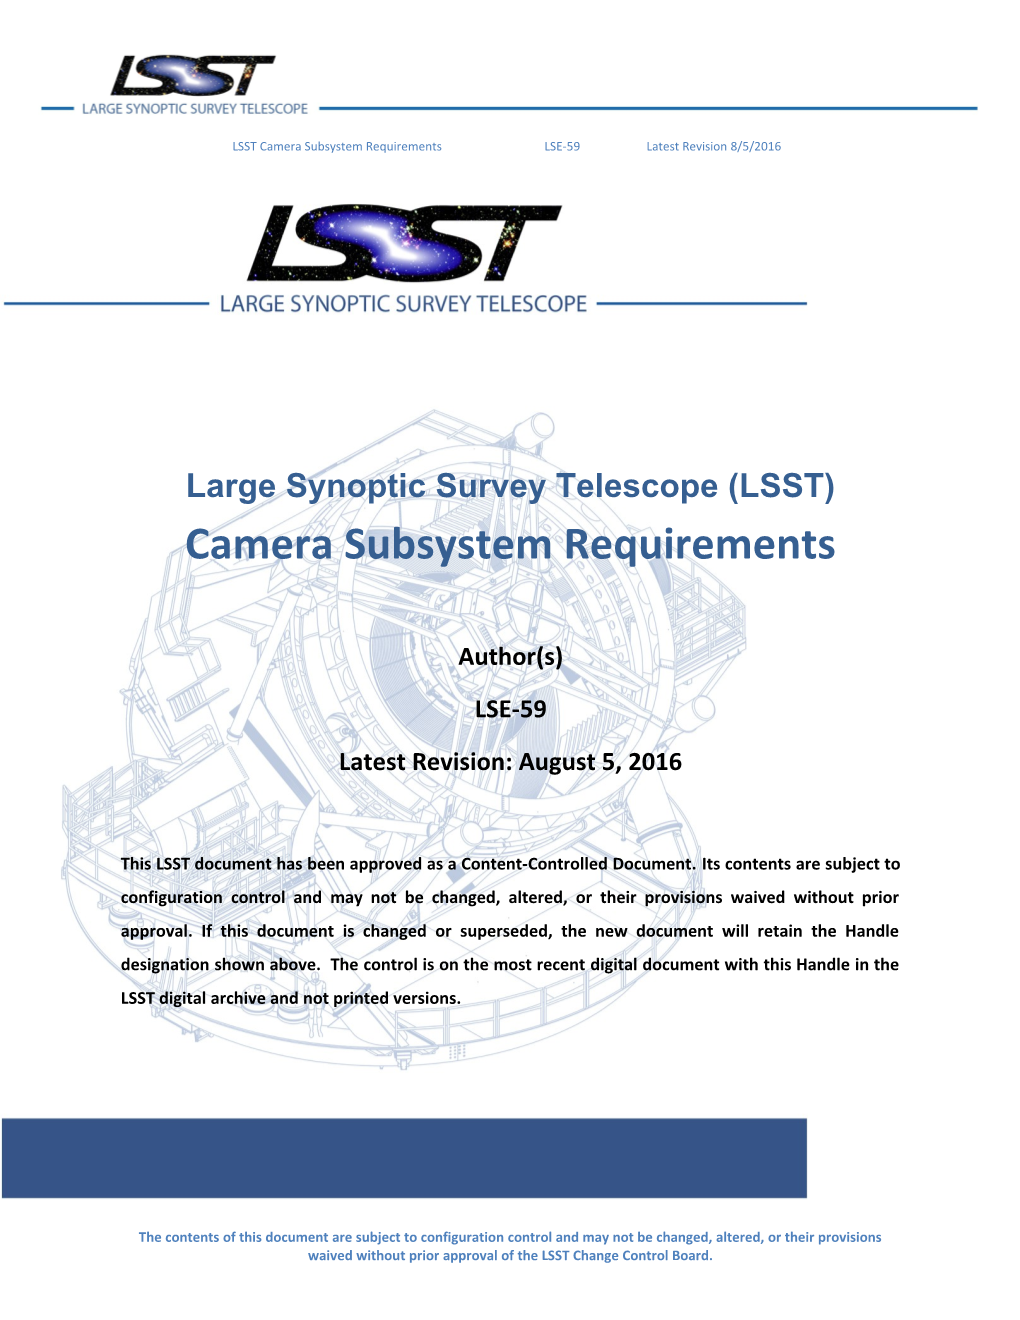 Large Synoptic Survey Telescope (LSST) s2